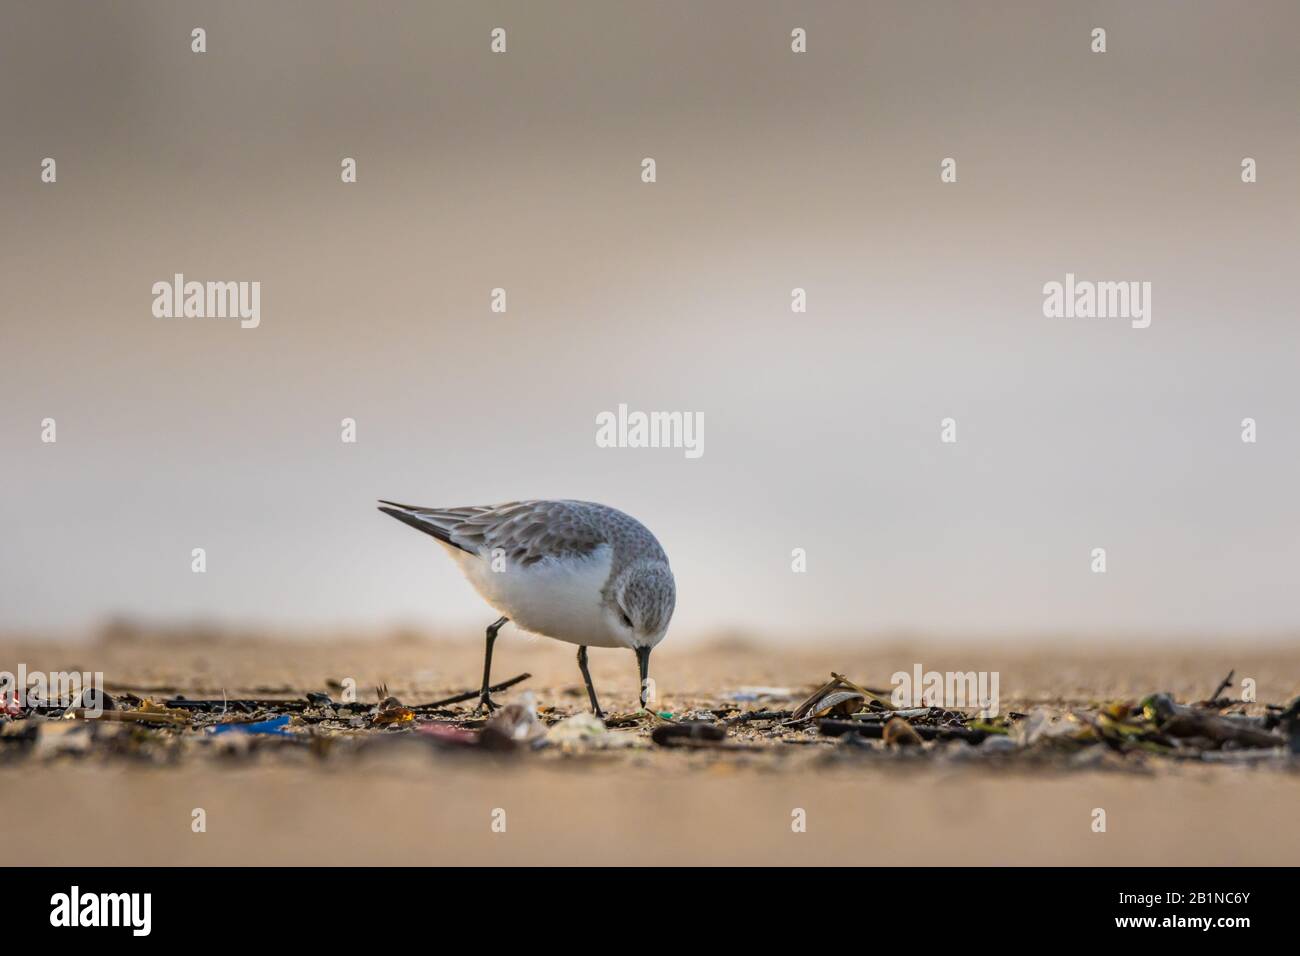 Un sanderling (Calidris alba), un piccolo uccello guado, alla ricerca di cibo in detriti accumulati nella sabbia da onde oceaniche con frammenti di plastica spazzatura Foto Stock